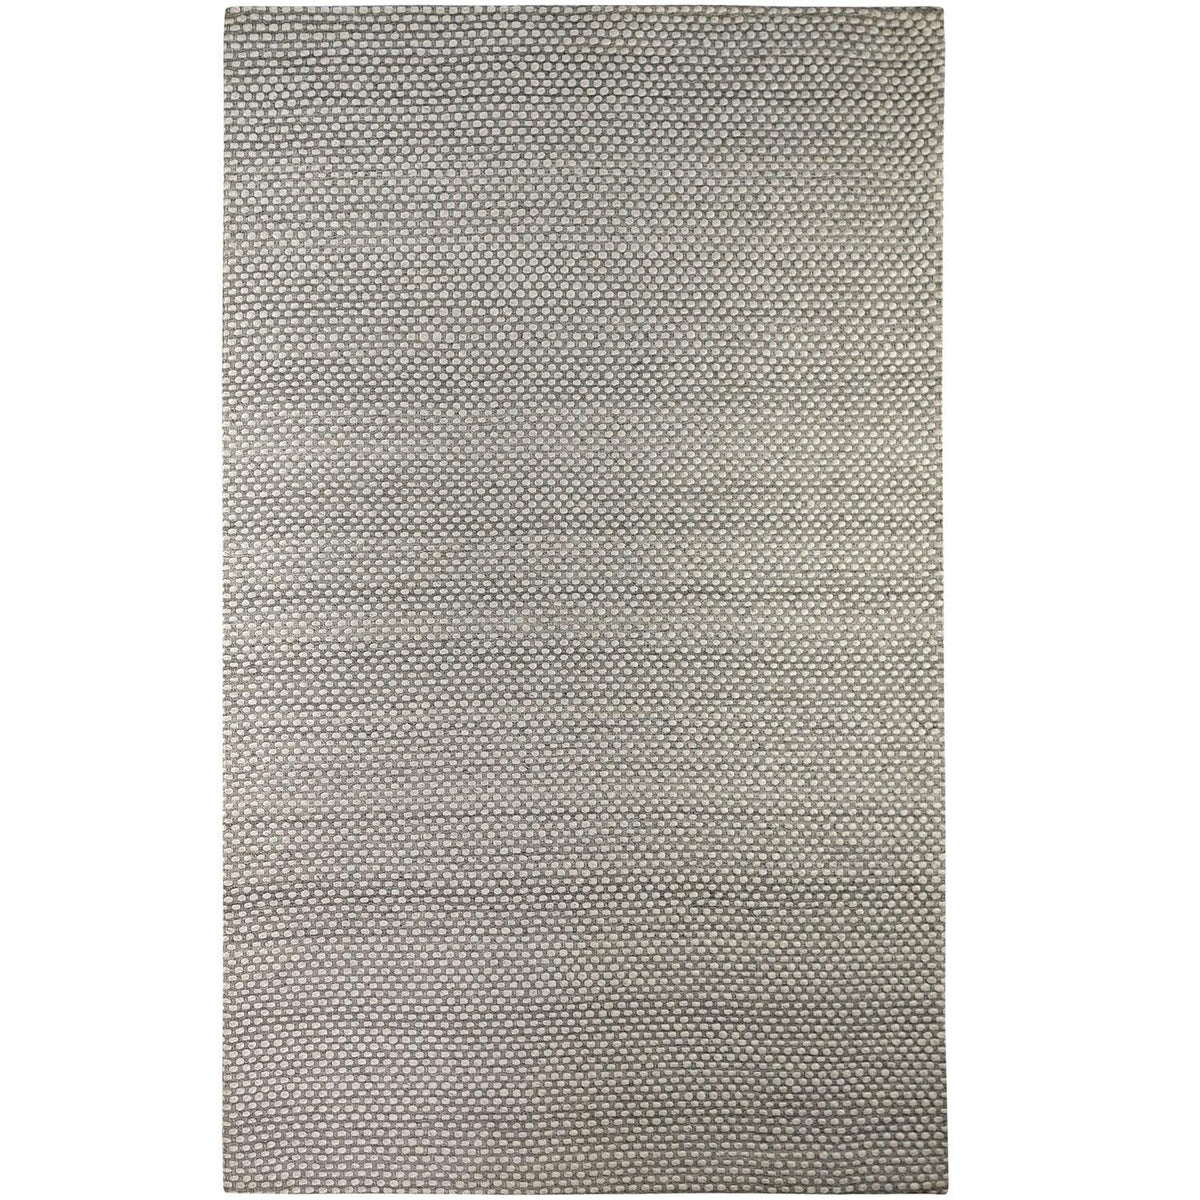 Modern Grey Wool Rug 153cm x 222cm